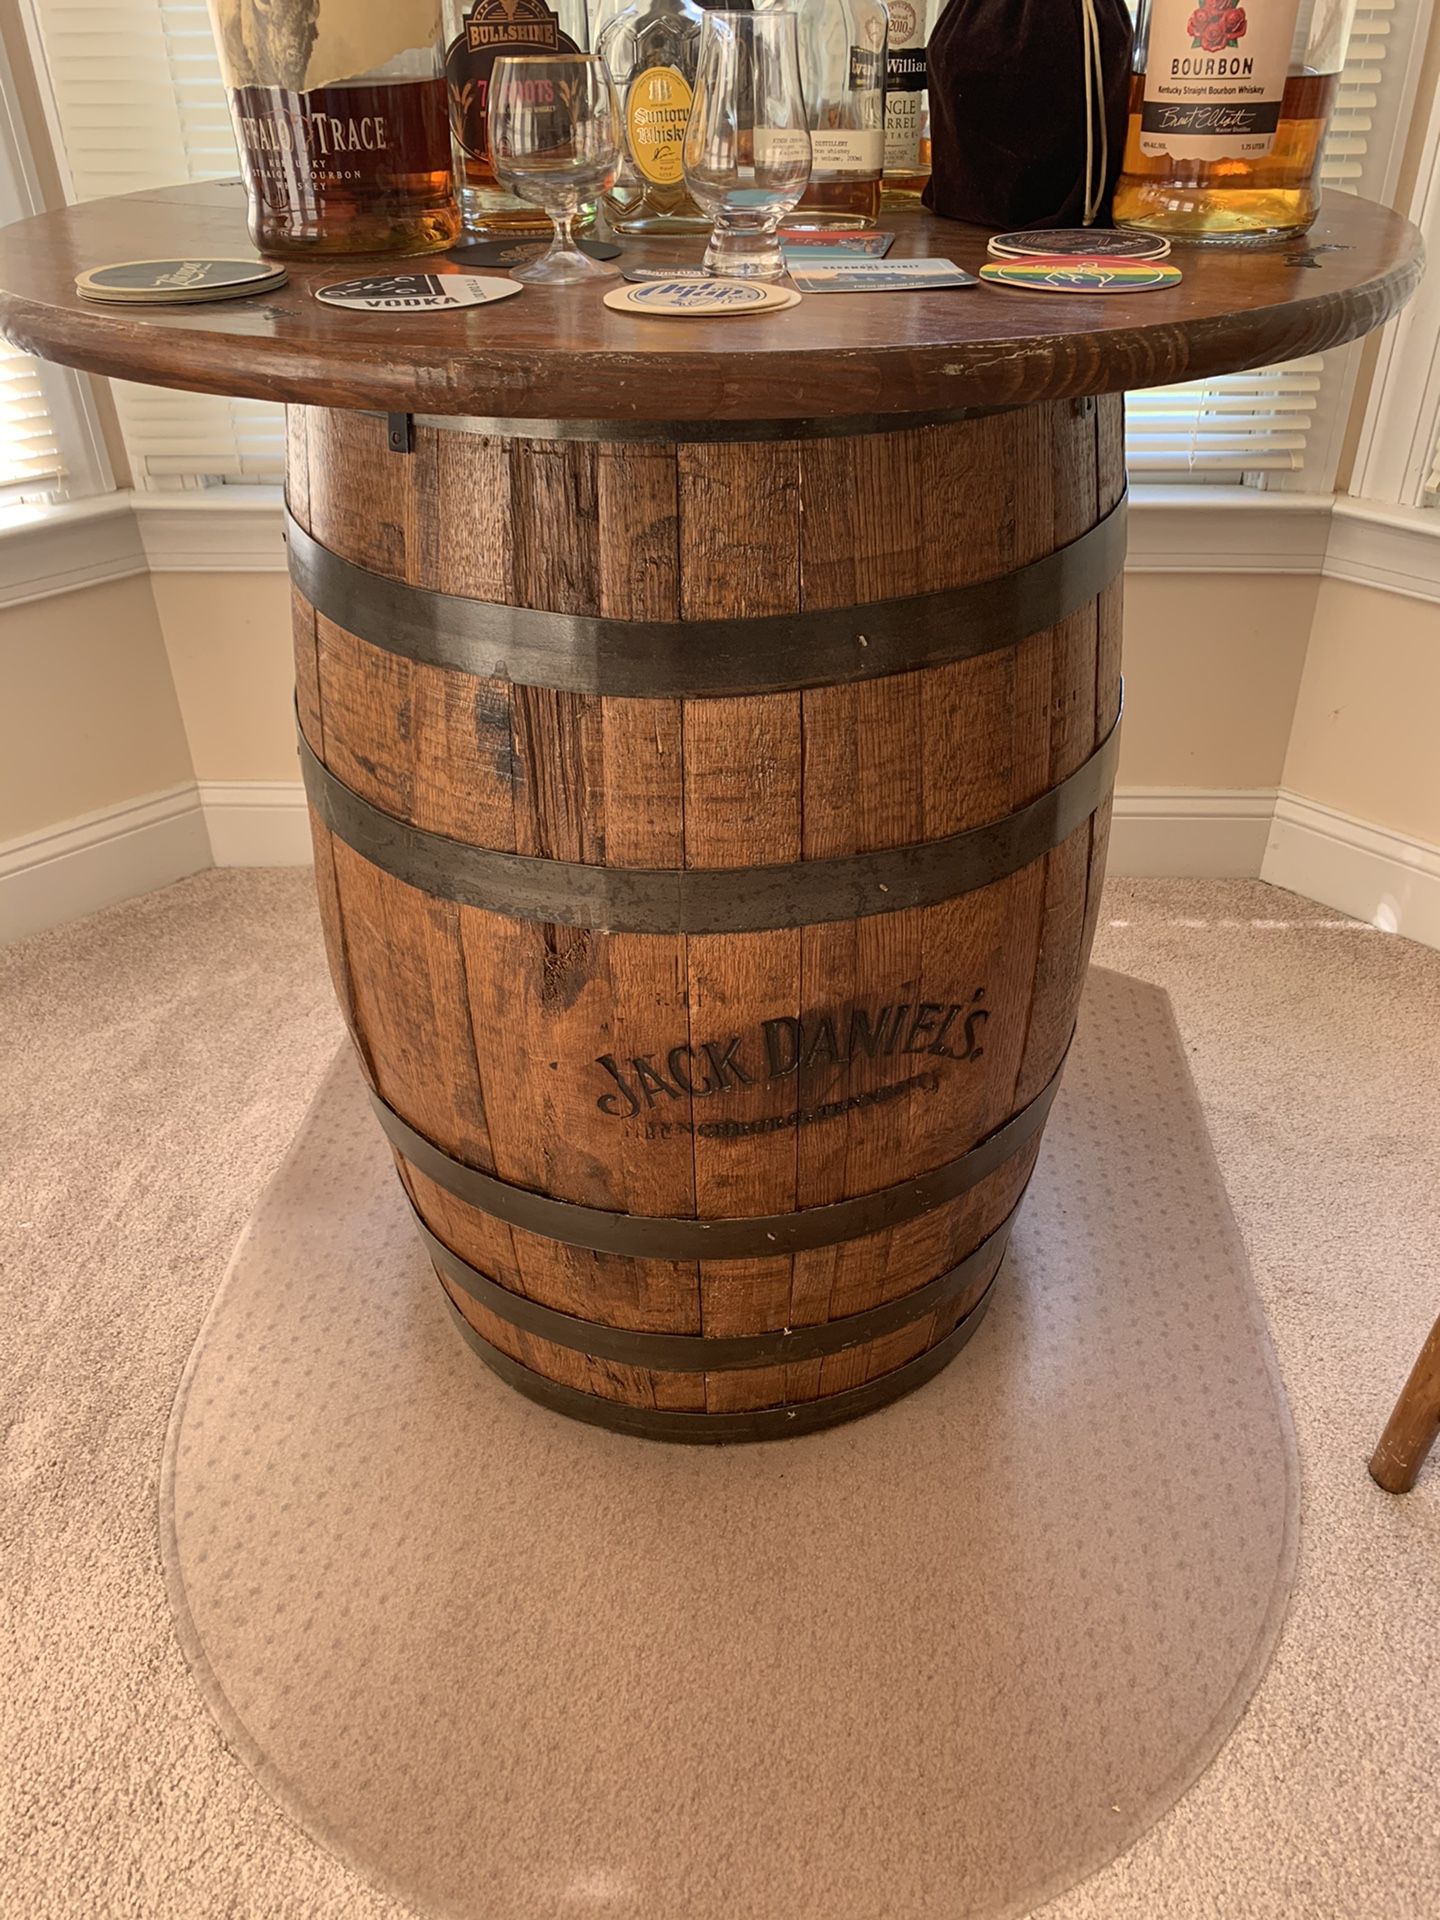 Jack Daniels bar barrel table